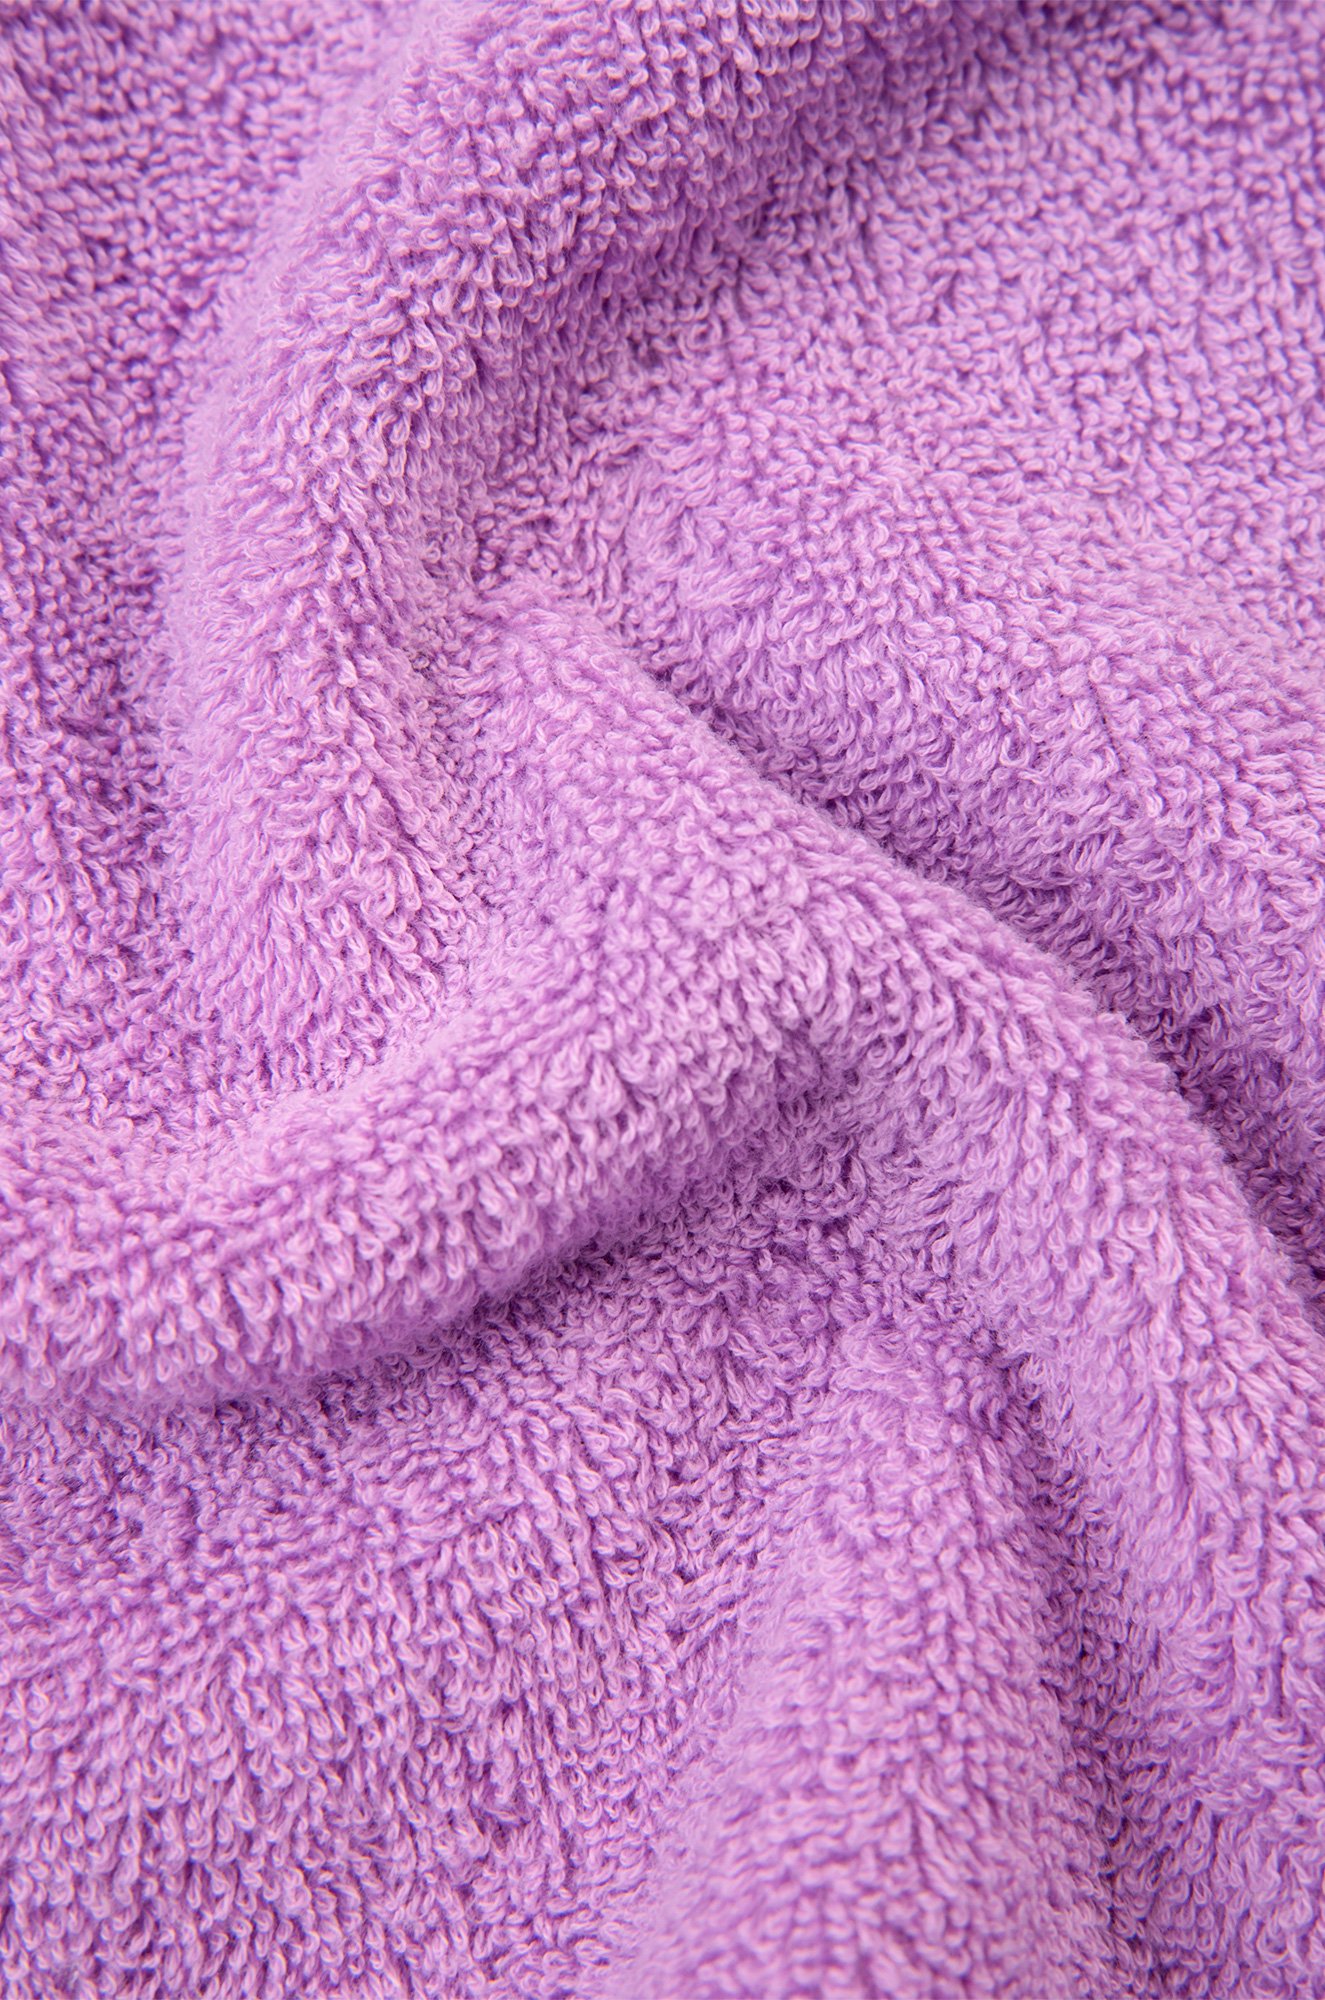 Подарочный комплект халат махровый и банные полотенца 2 шт. Happy Fox